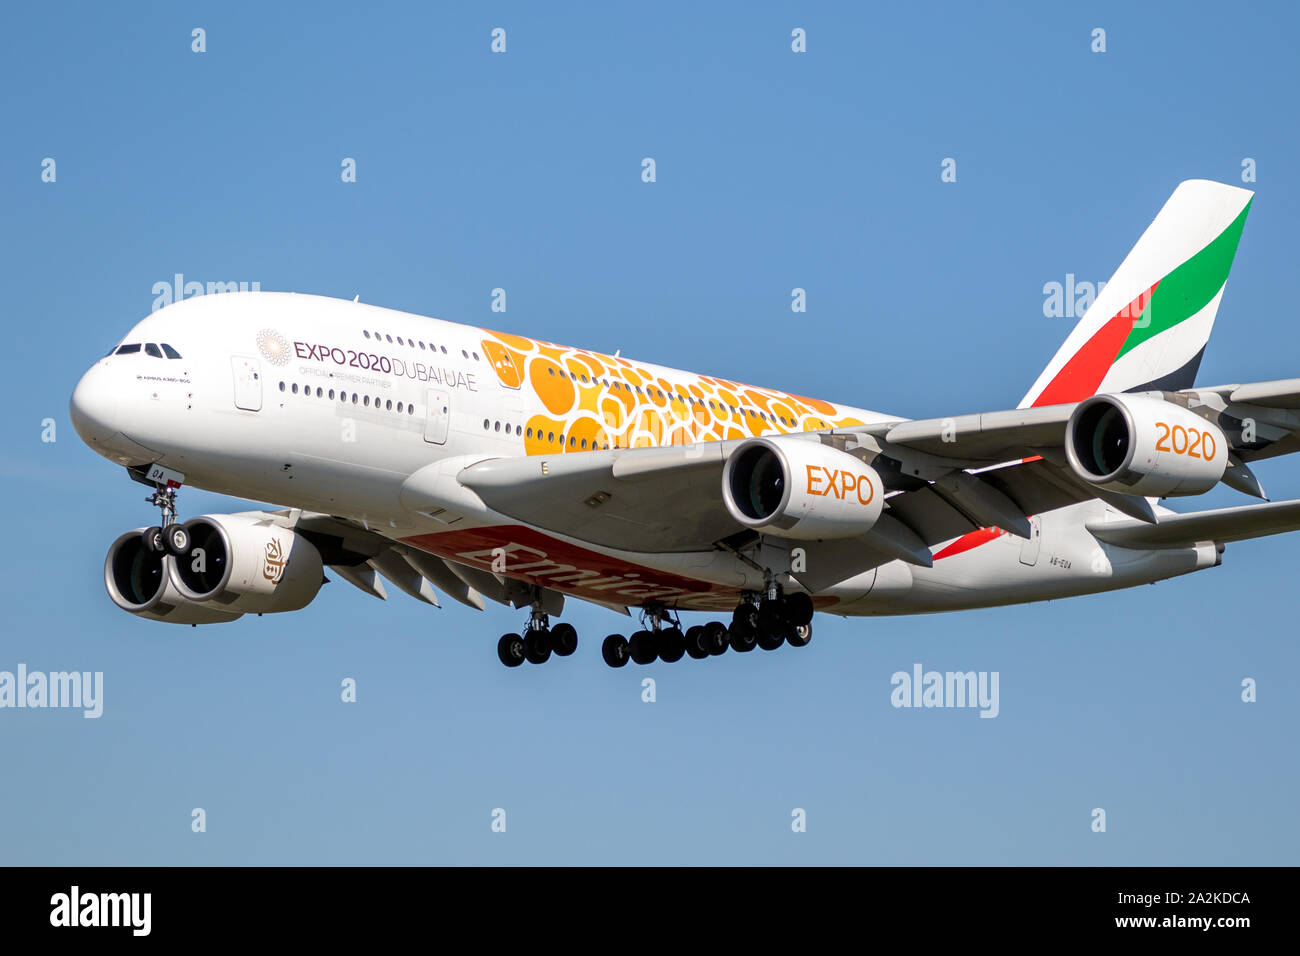 Francfort, Allemagne - Sep 11, 2019 : Emirates Airlines Airbus A380 avion de passagers sur l'aéroport de Francfort. Banque D'Images